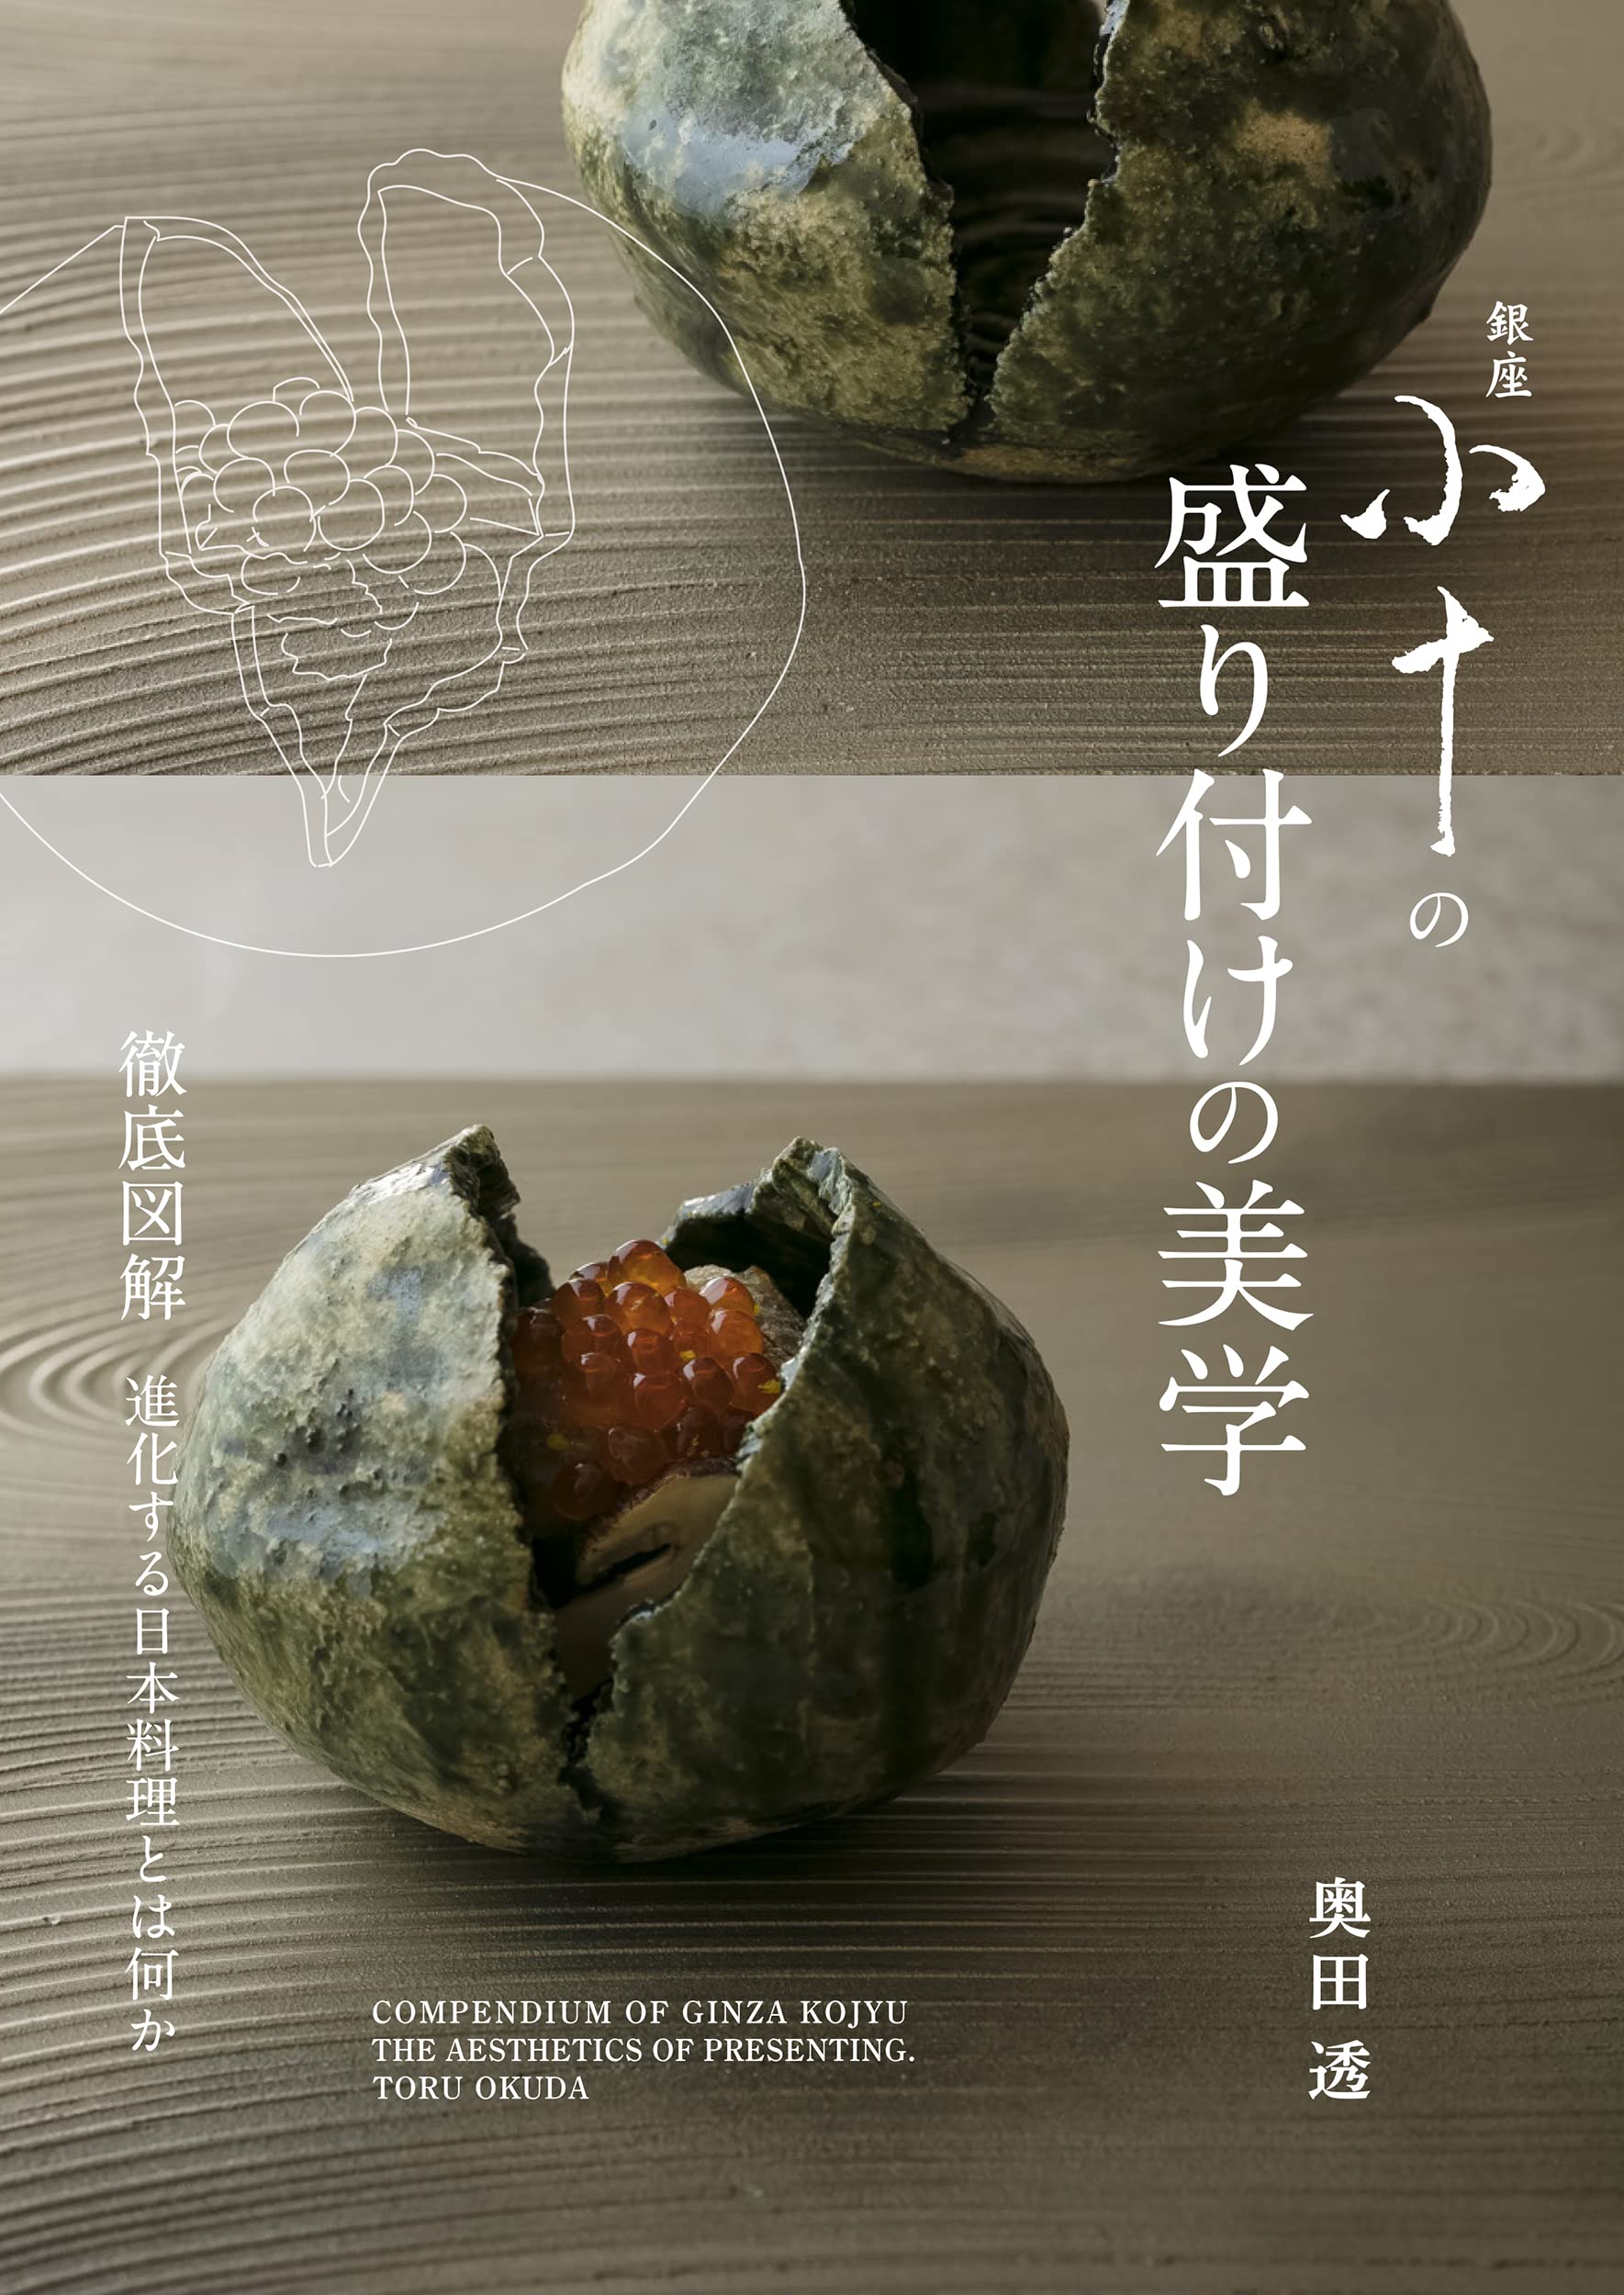 銀座 小十の盛り付けの美學: 徹底圖解 進化する日本料理とは何か